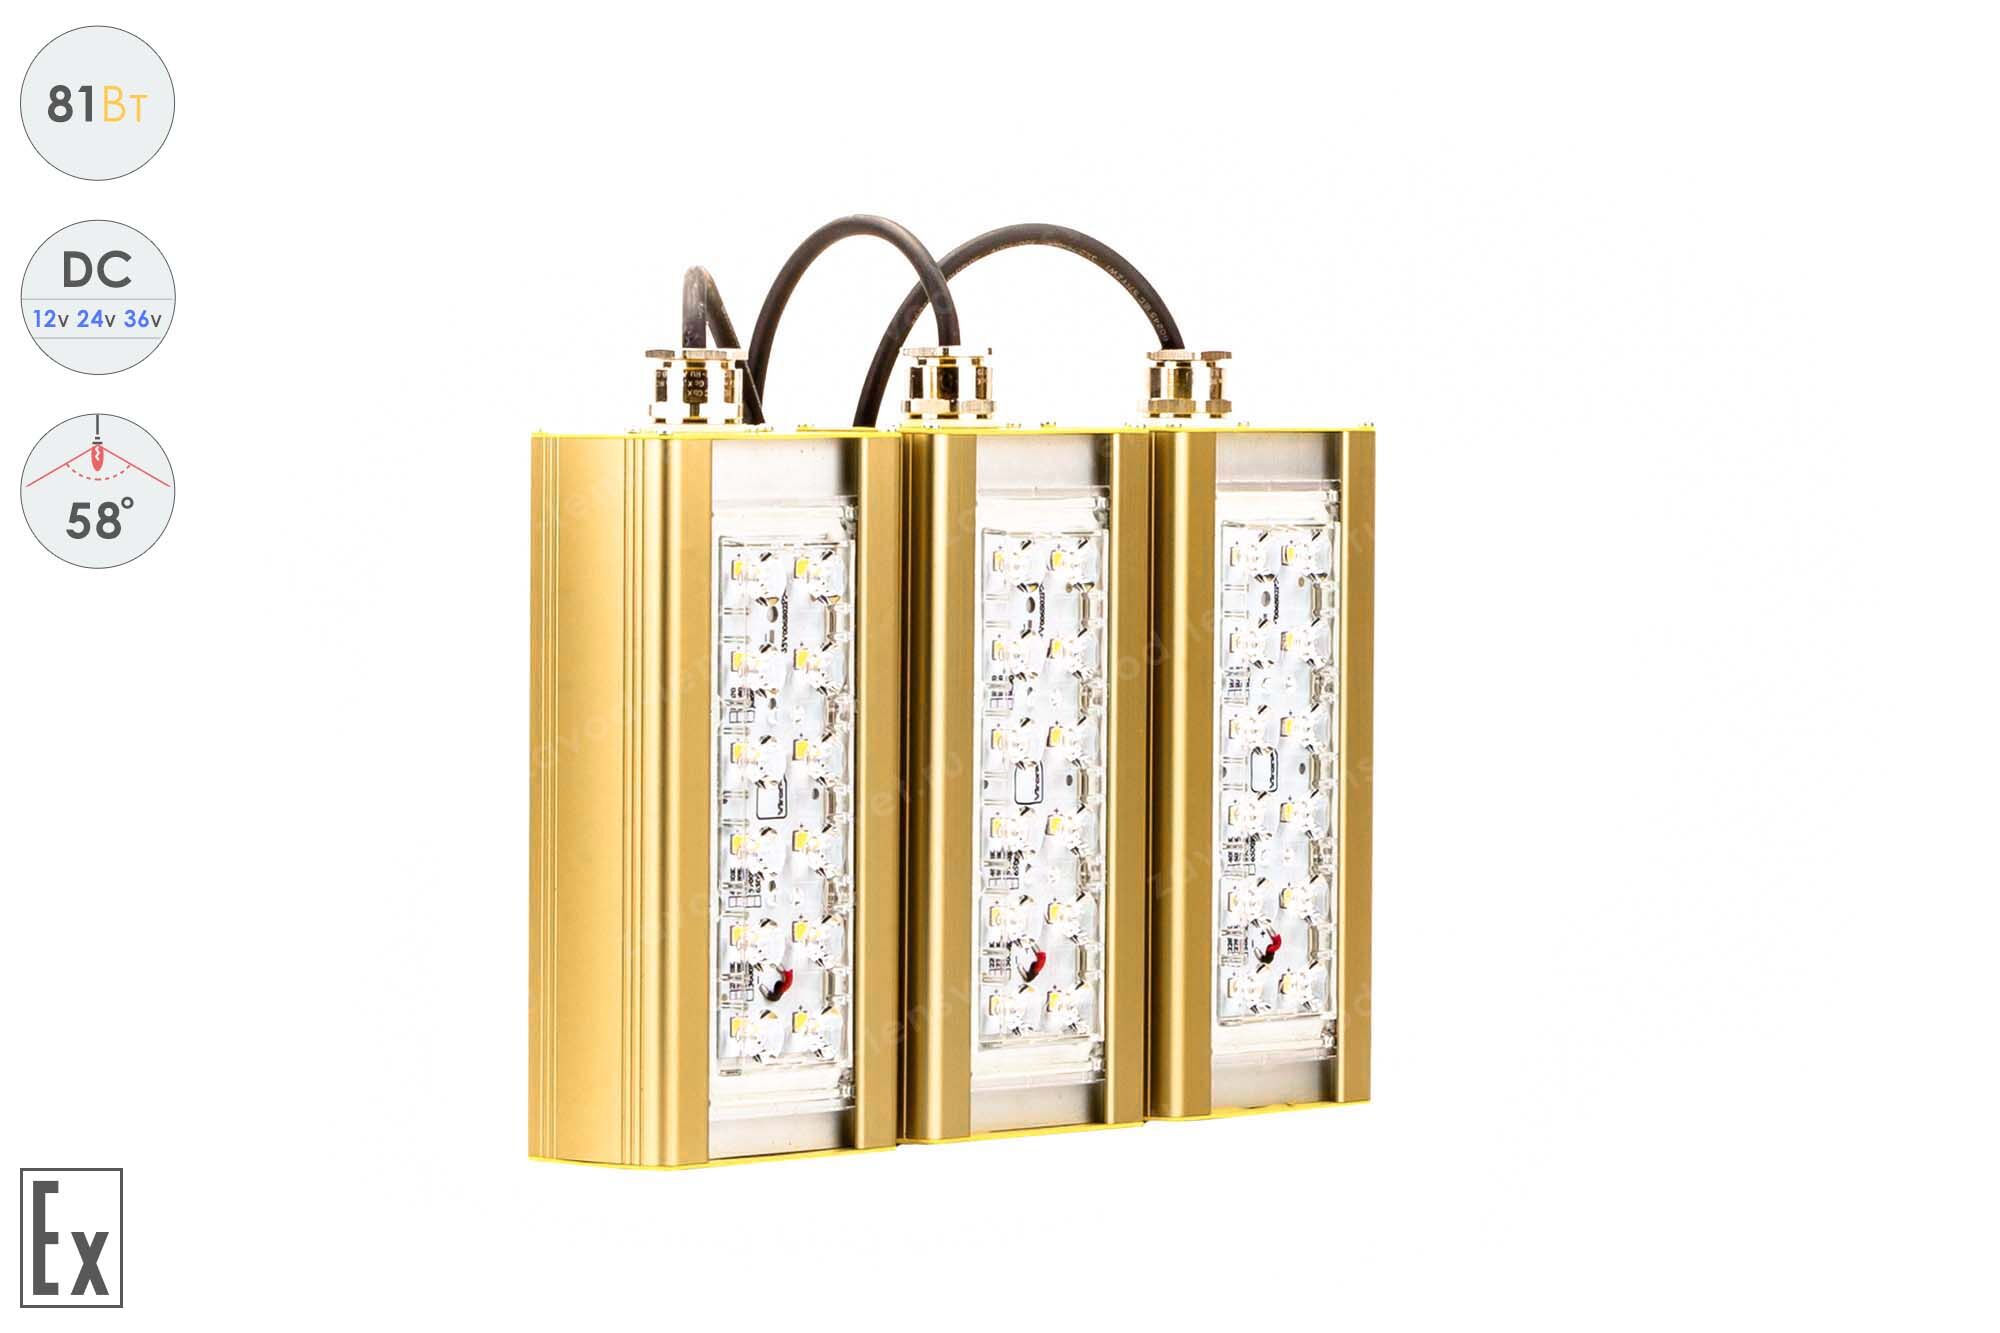 Светодиодный светильник Низковольтный Прожектор Взрывозащищенный GOLD, консоль K-3, 81 Вт, 58°